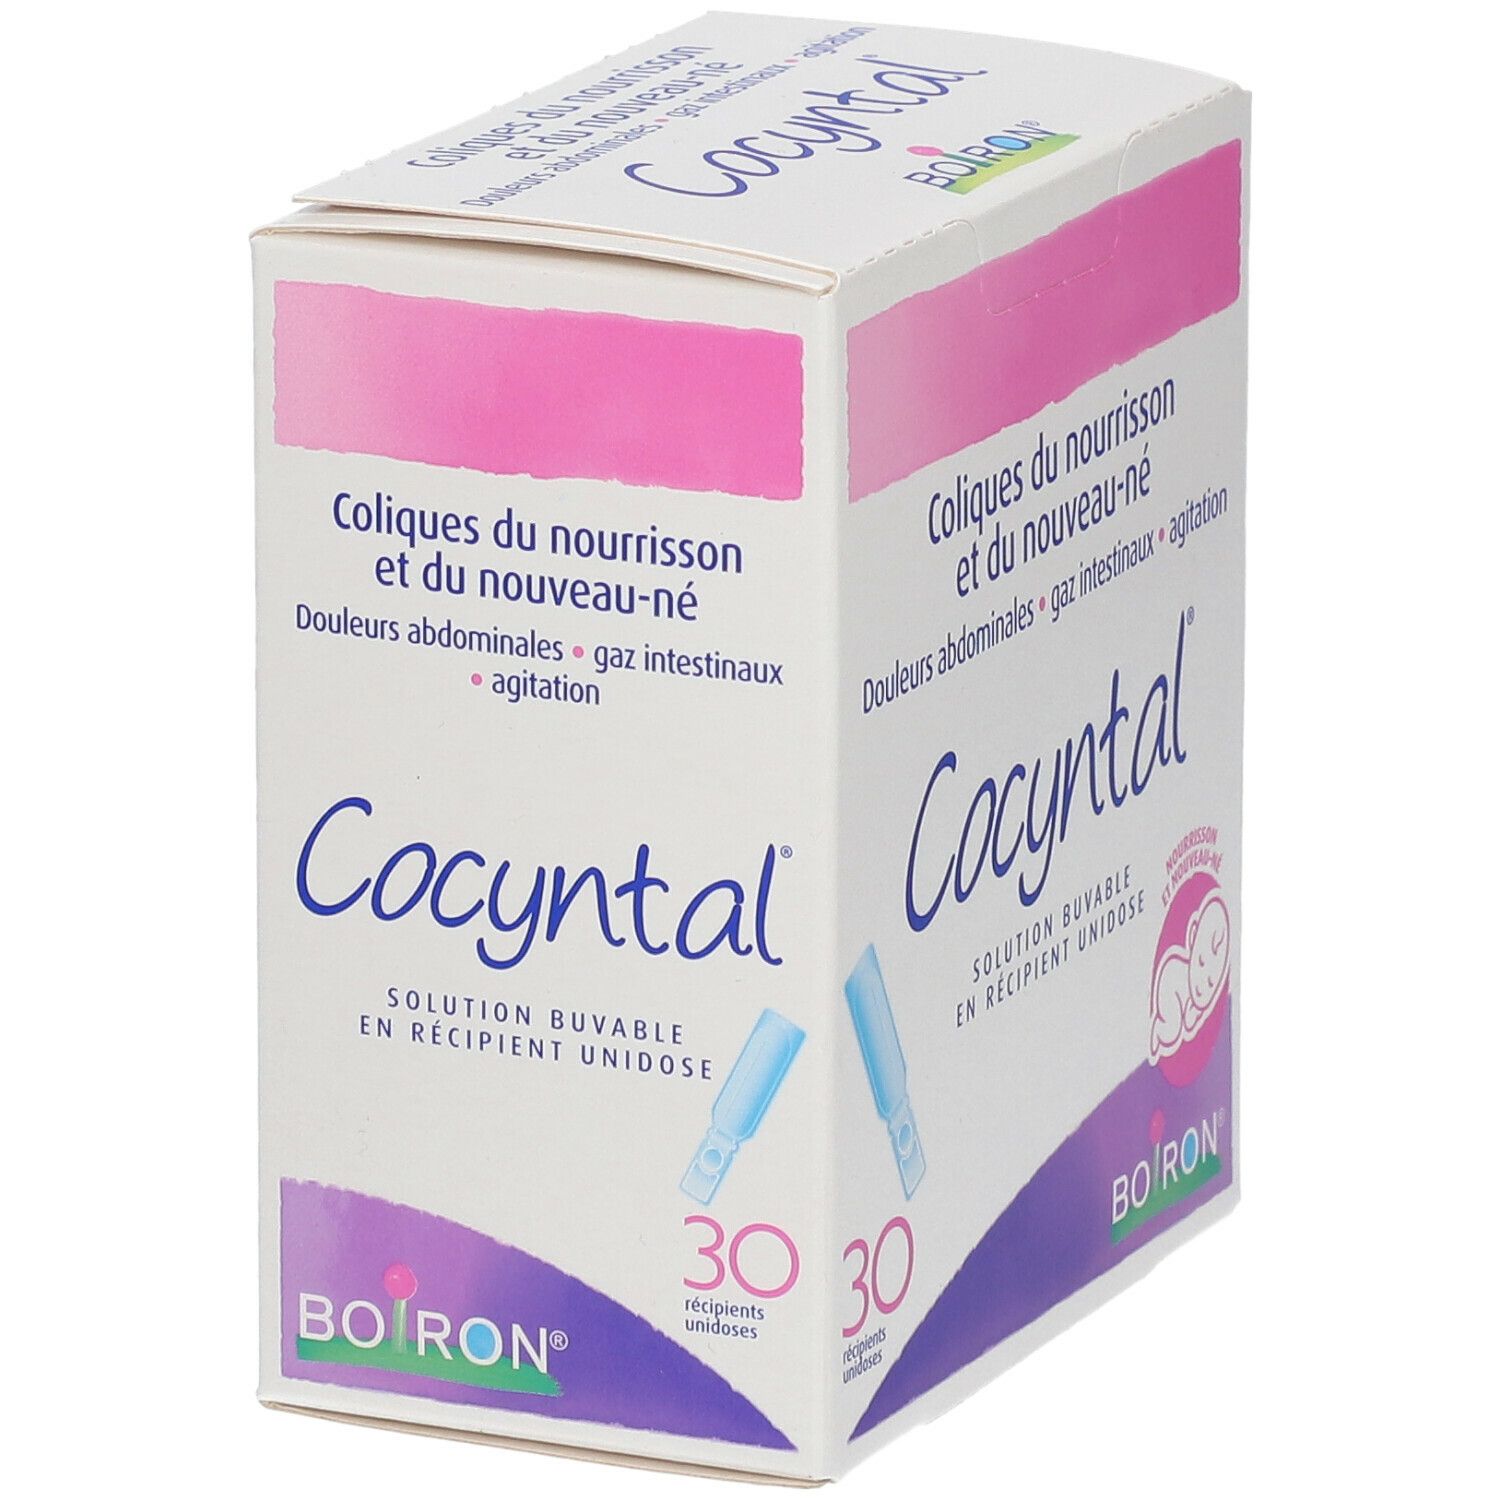 Boiron Cocyntal Coliques du Nourrisson 30 unidoses